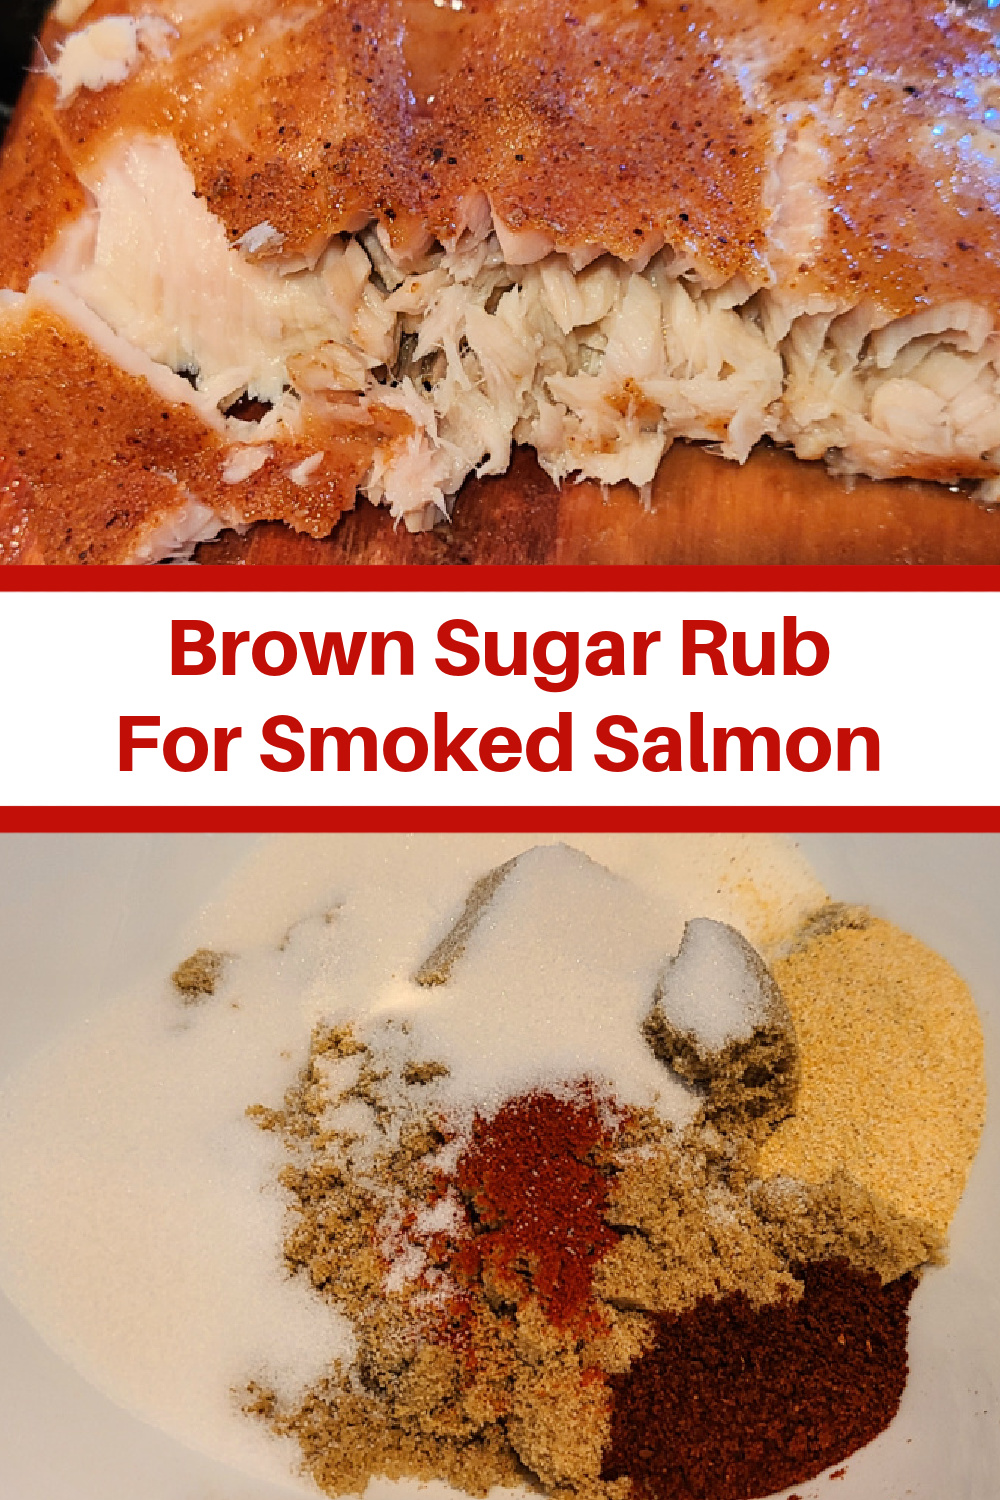 Brown Sugar Rub For Smoked Salmon